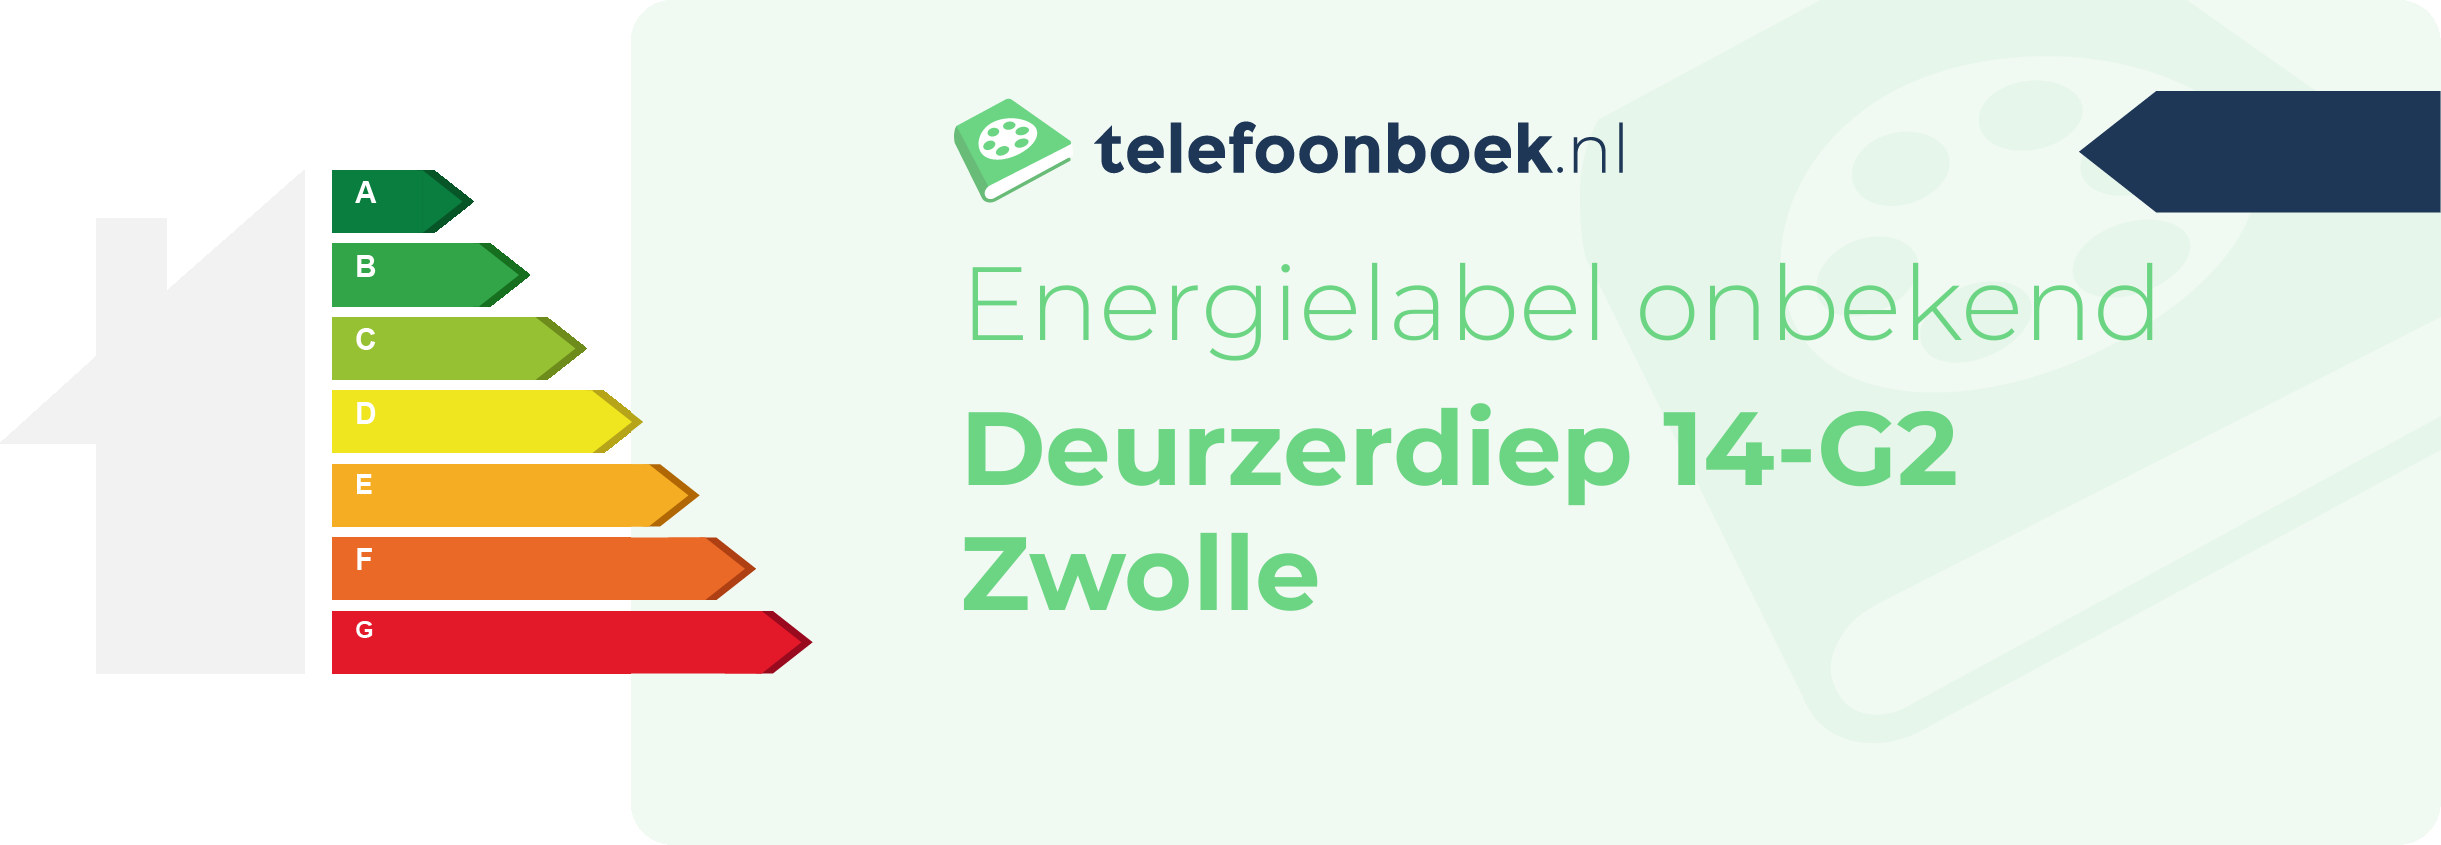 Energielabel Deurzerdiep 14-G2 Zwolle